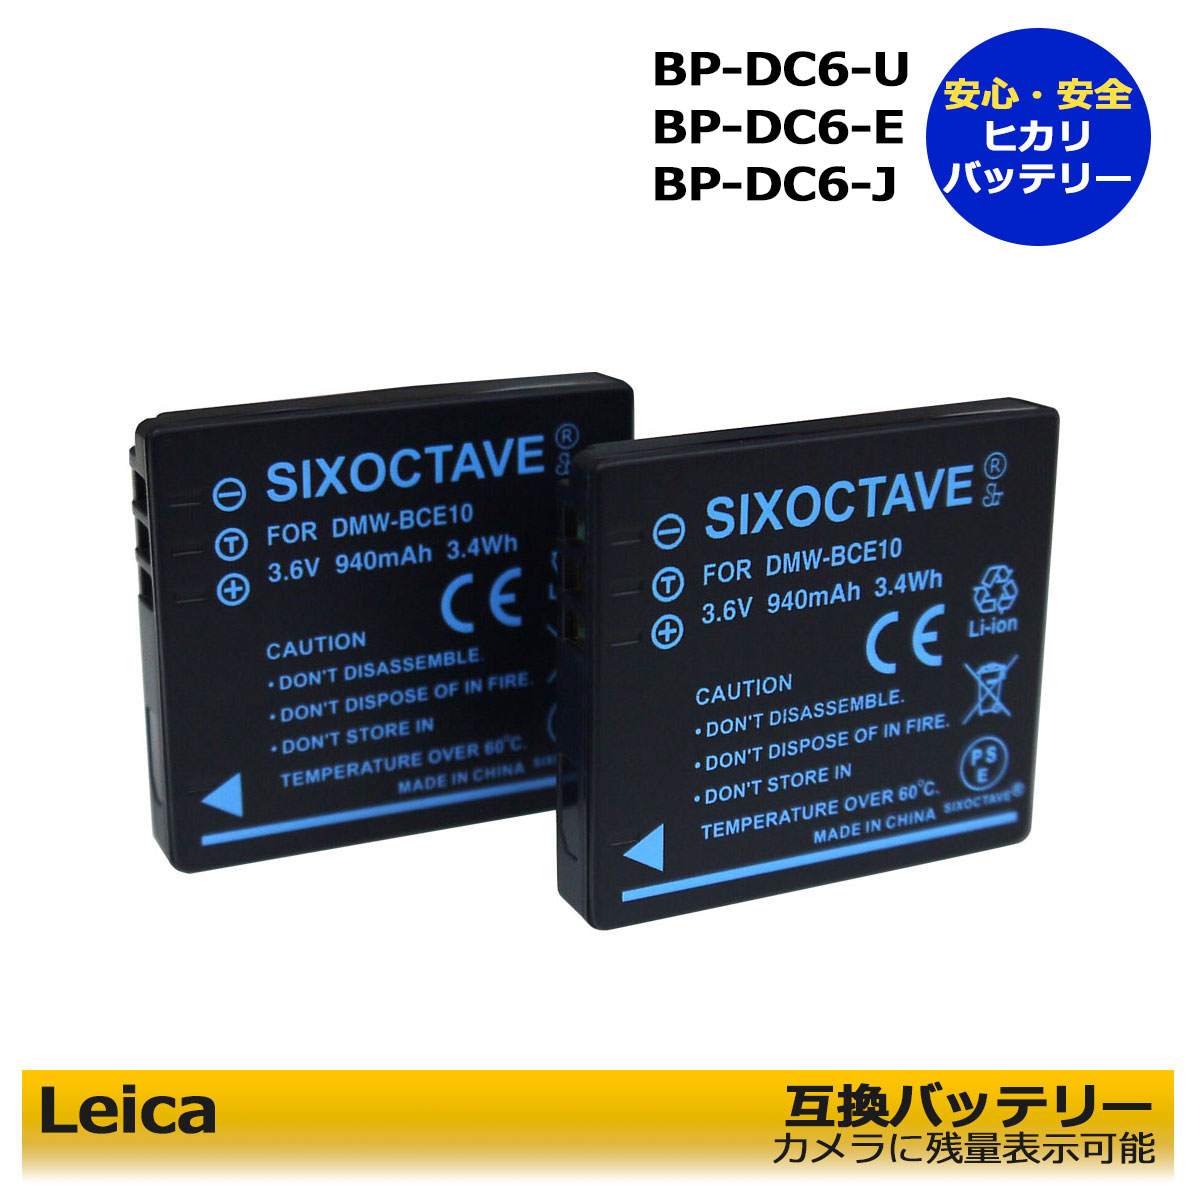 BP-DC6-U / BP-DC6-E / BP-DC6-J / BP-DC6　等 商品内容 互換バッテリー　1個 ※商品お届け時の表記型番はDMW-BCE10ですが、ライカのBP-DC6 / BP-DC6-E / BP-DC6-Jでも互換可能となります為問題なくご使用いただけます。※ 規格 形式：リチウムイオン 電圧：3.6V 容量：940mAh サイズ（約）：横35.5mm/高さ39.5mm/厚み6mm 重量：約19g 対応機種 【 LEICA 】 C-LUX 2 C-LUX 3 【互換バッテリー】 BP-DC6-U BP-DC6-E BP-DC6-J BP-DC6 【対応充電器】 BC-DC6-U BC-DC6-E BC-DC6-J BC-DC6 仕様 ●純正品＆互換充電器でも充電可能にも対応。 ●残量表示可能。 ●認証：PSEマーク（電気用品安全法）取得製品。 ●認証：CEマーク（欧州連合安全規制）取得製品。 ●ご購入日より安心6ヶ月保証 ●PL保険（生産物賠償責任保険）加入済み。 ●本製品には過電流保護、過充電防止、過放電防止の保護回路が内蔵。 届出事業者名：SIXOCTAVE PSマークの種類：PSE